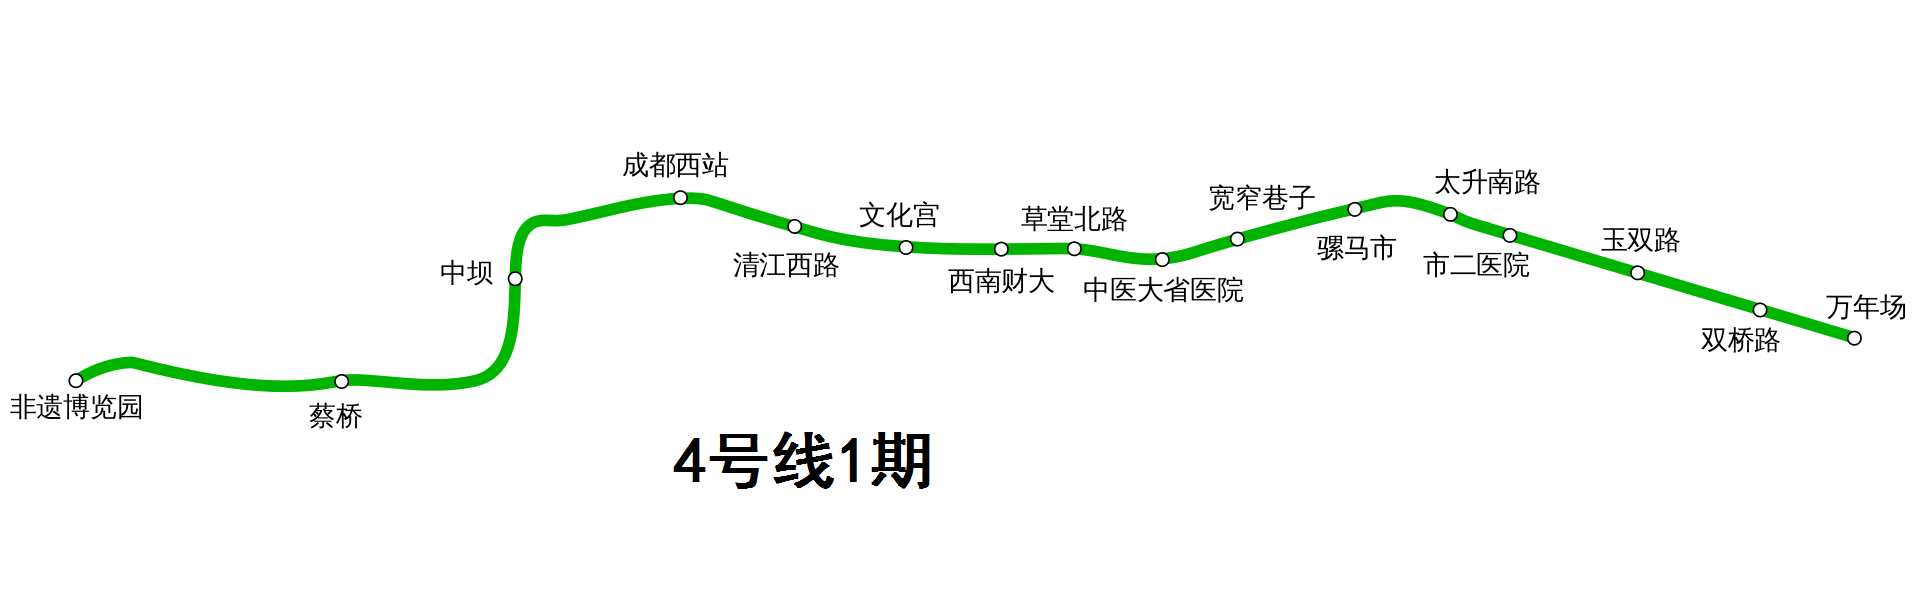 成都地铁4号线编组图片